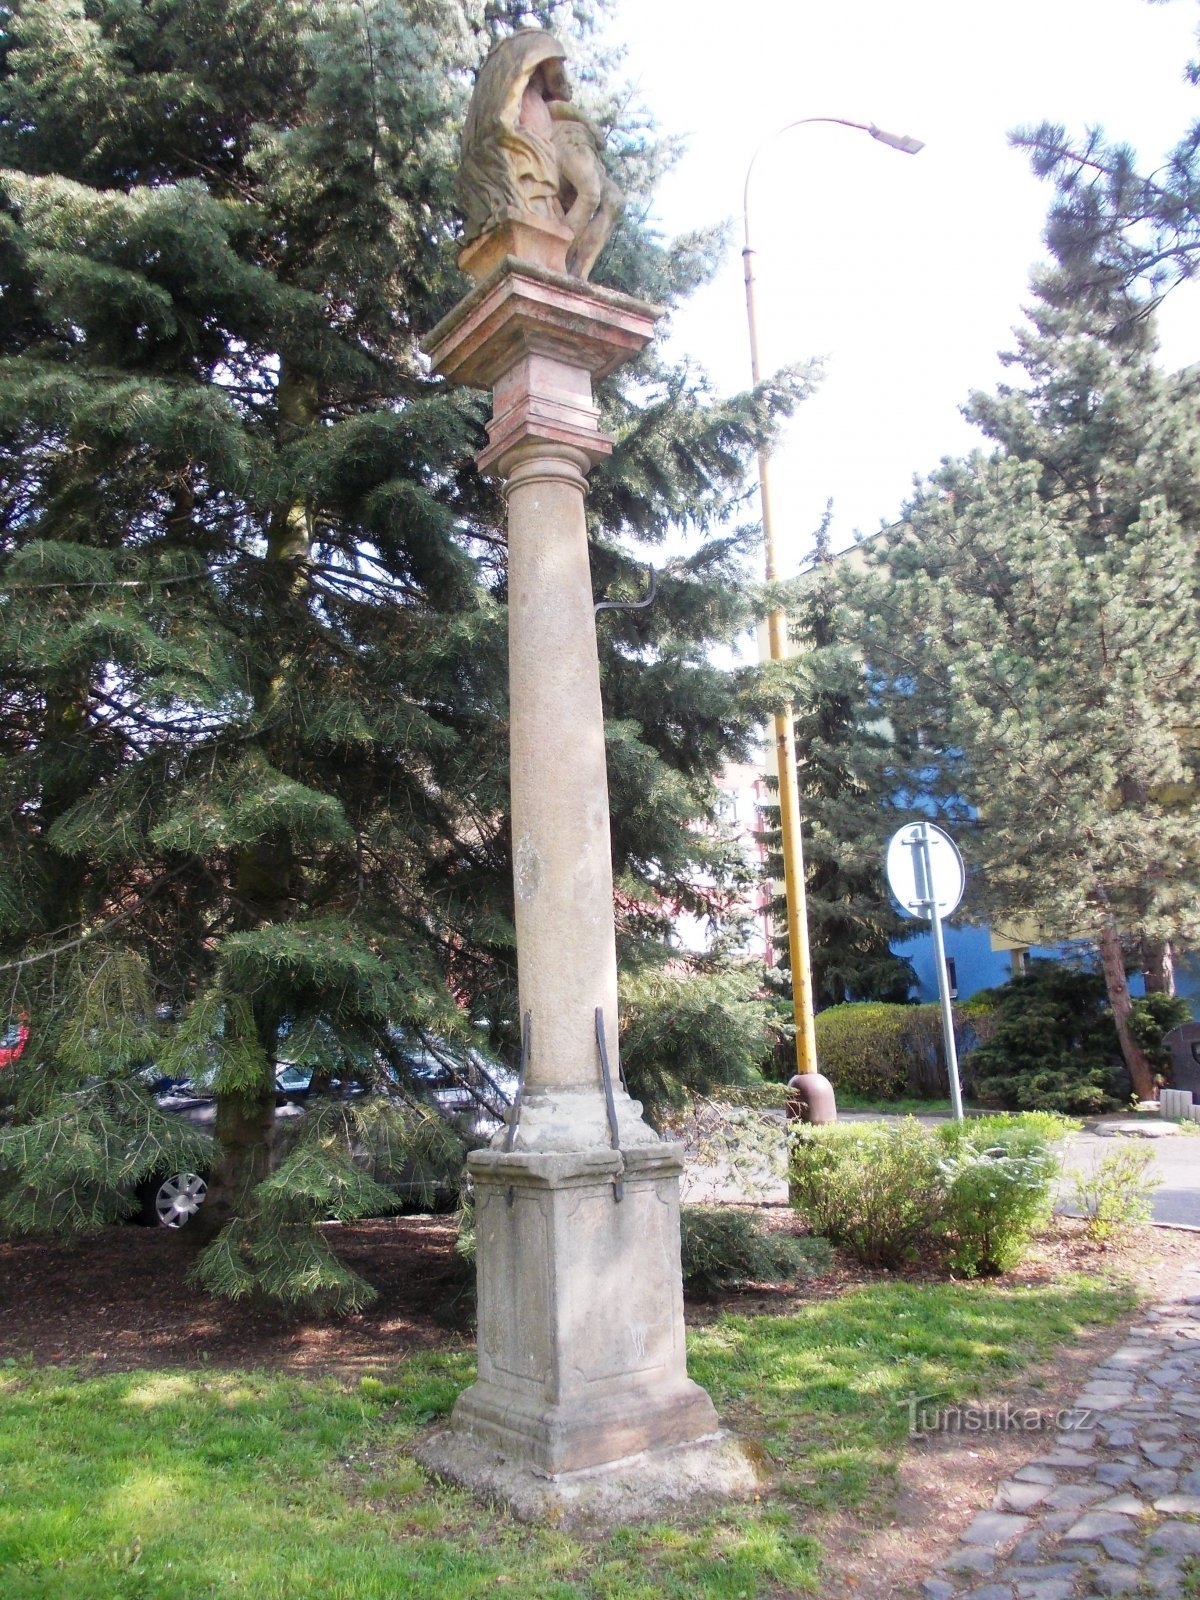 ピエタ像のある柱